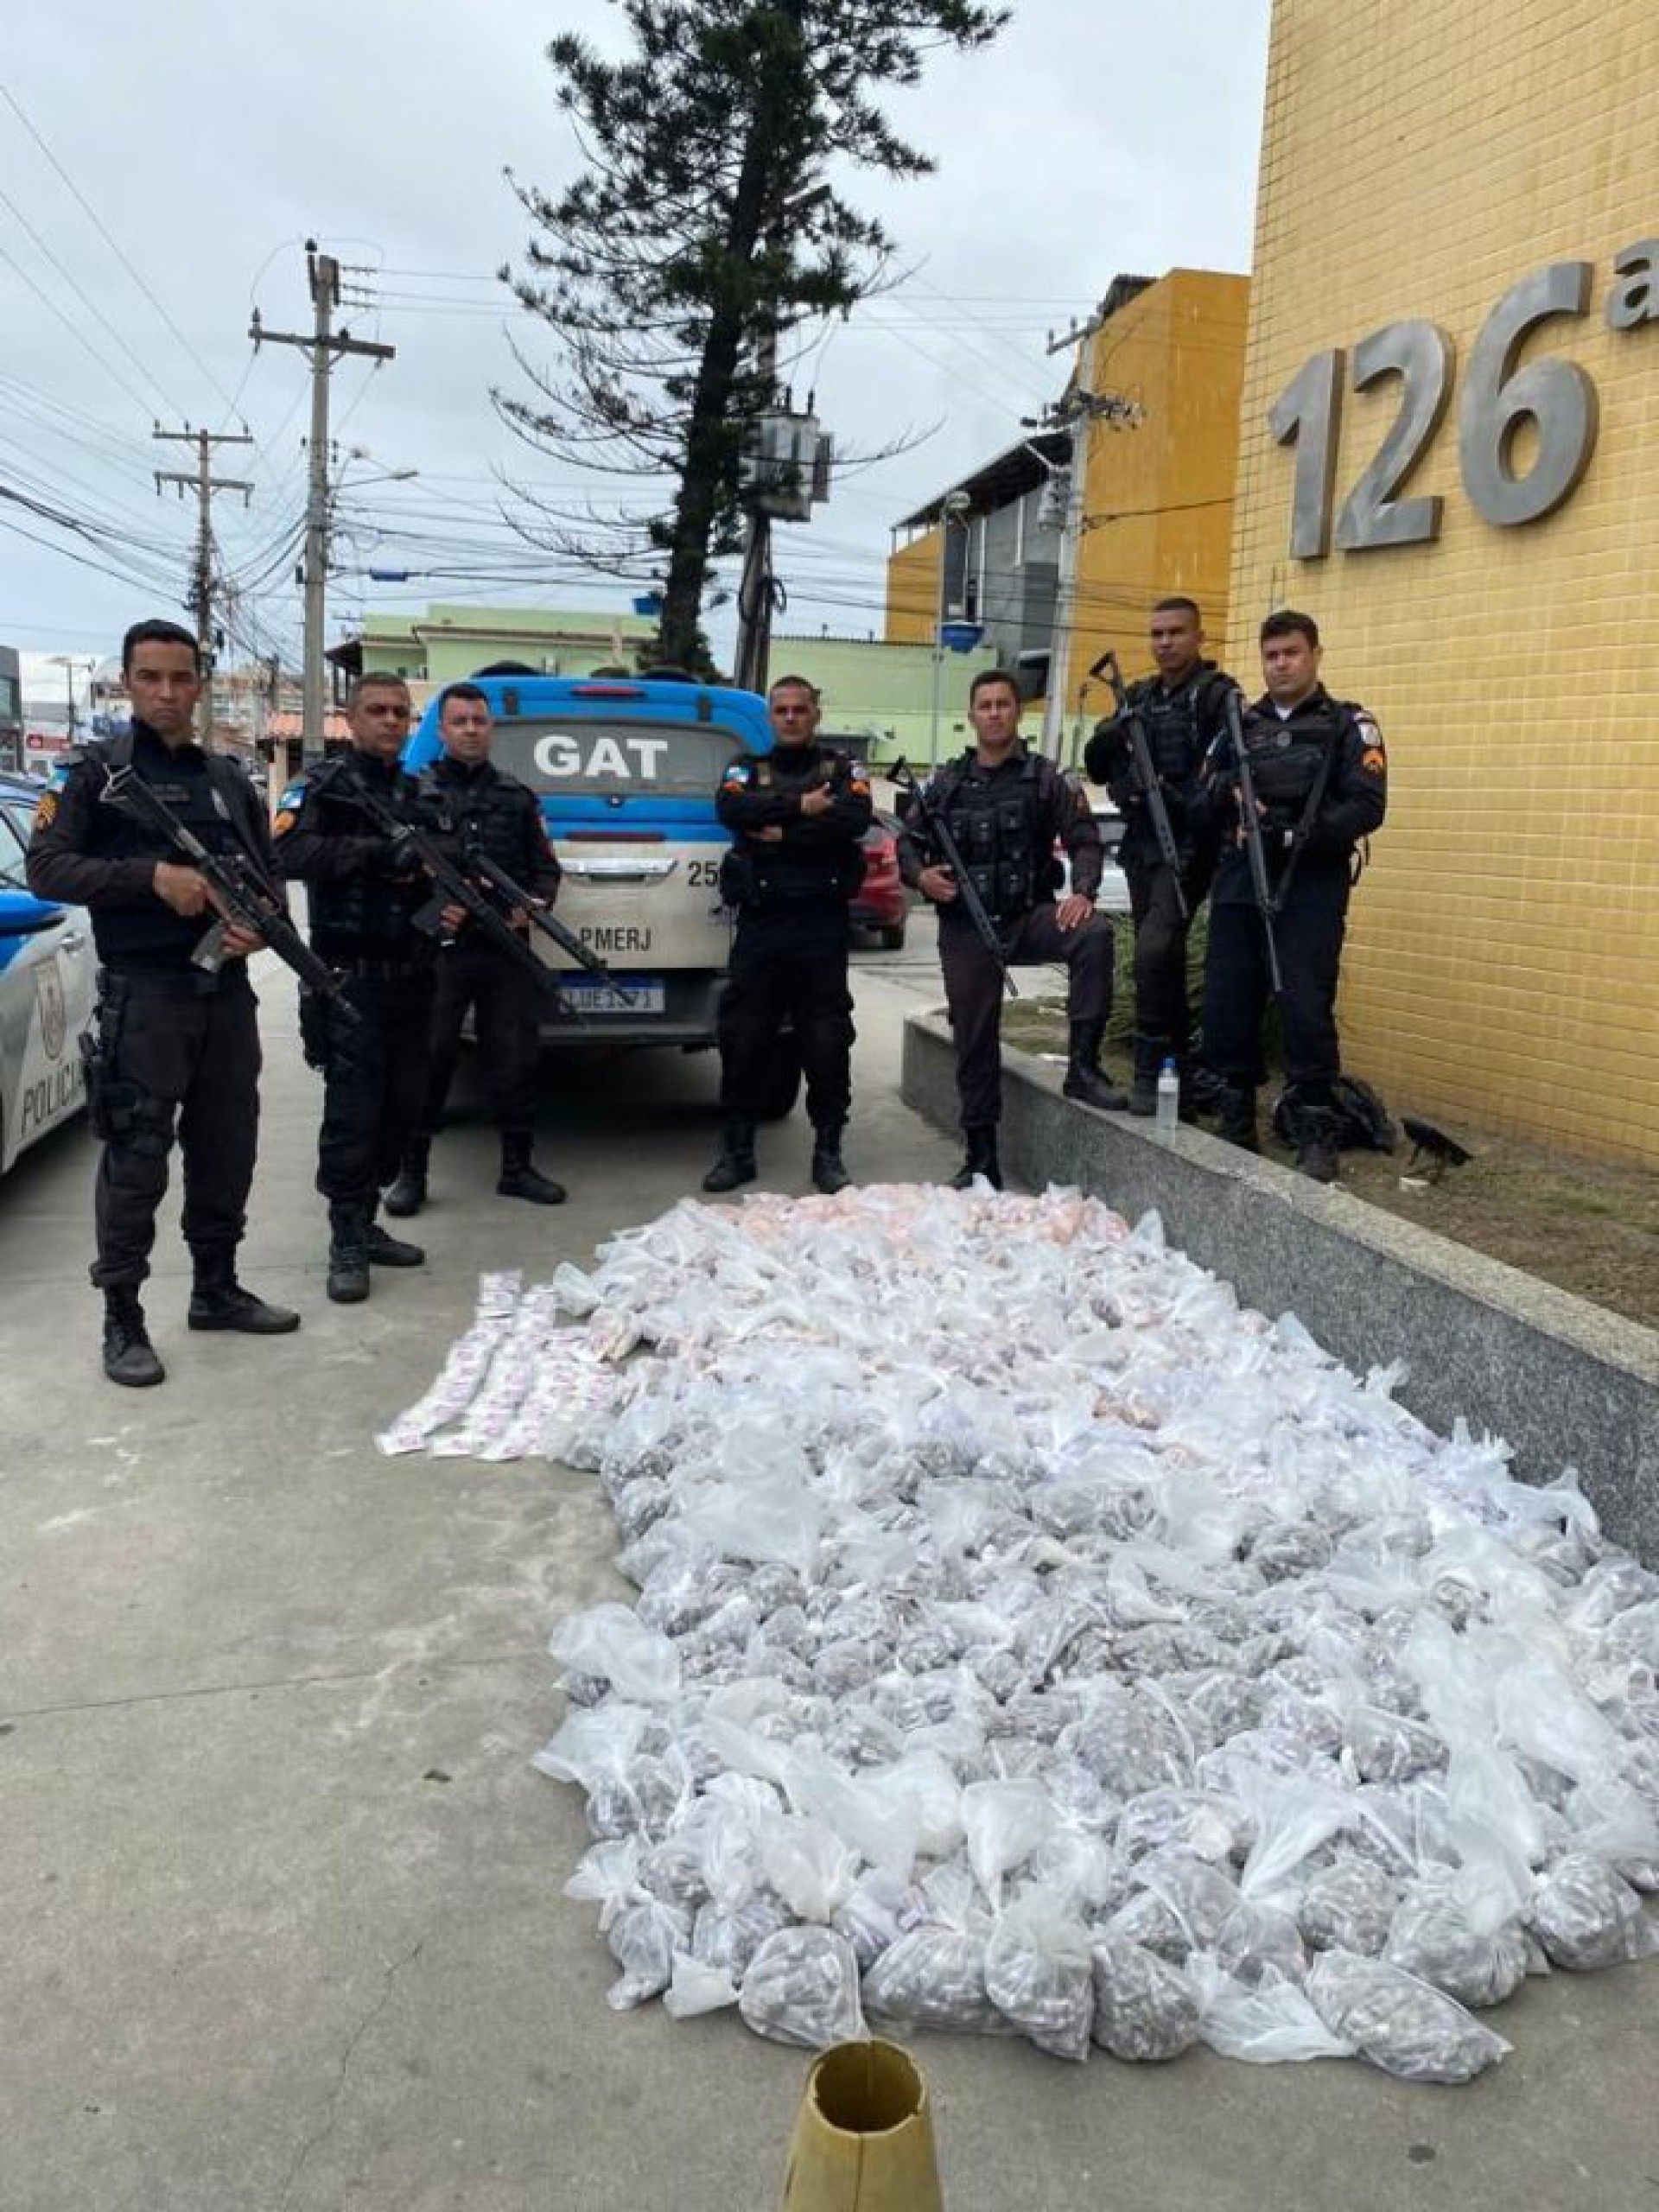 Os agentes localizaram 21.744 tabletes de maconha, 9.348 cápsulas de cocaína e 6.960 pedras de crack - Letycia Rocha (RC24h)